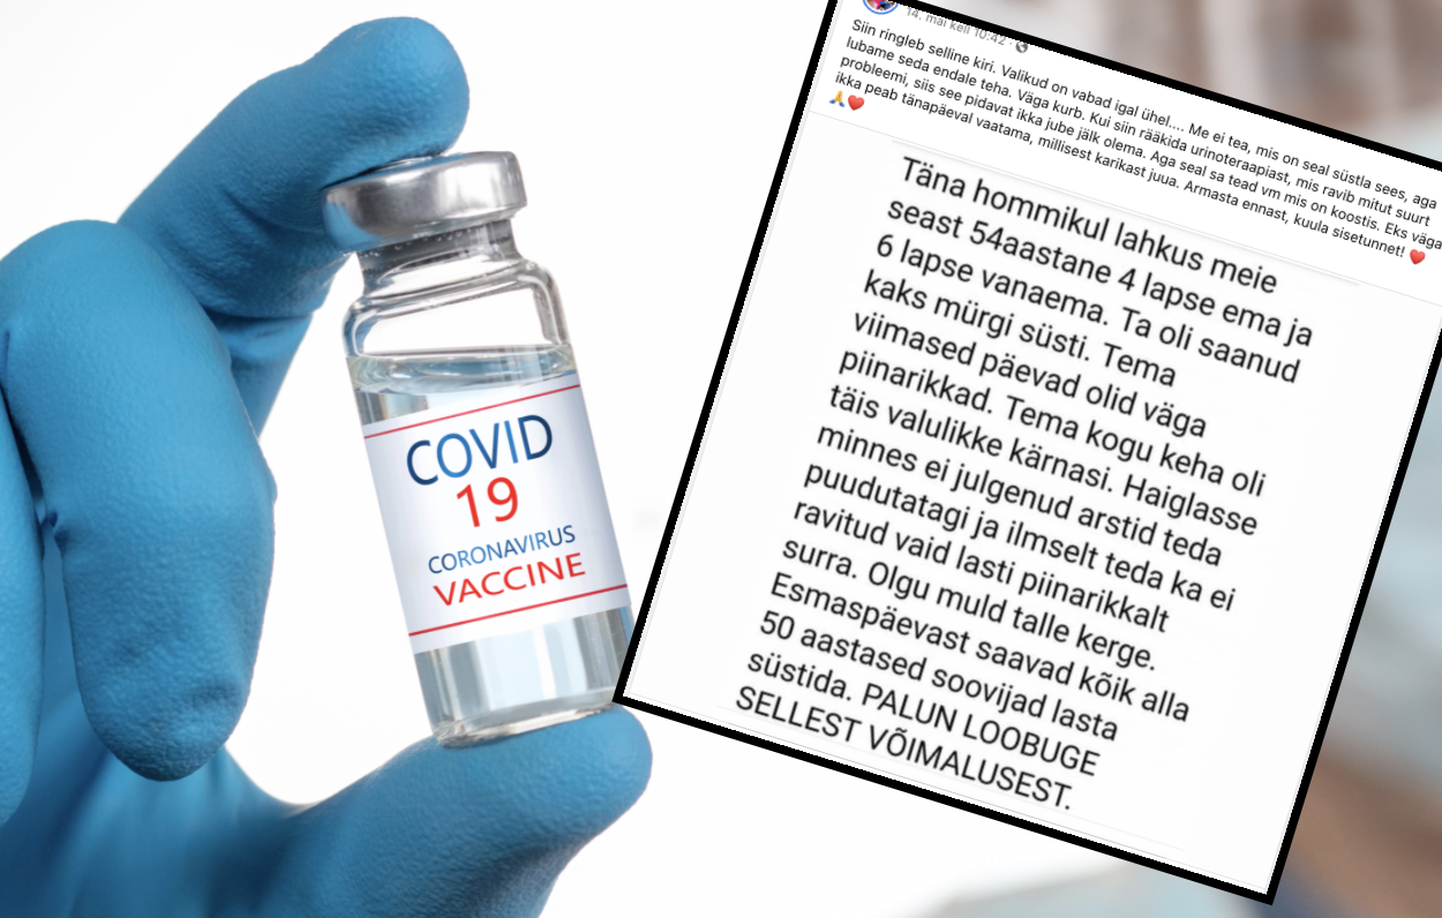 За несколько дней до начала массовой вакцинации в Facebook распространялась страшилка о женщине, которая умерла после двух доз вакцины.